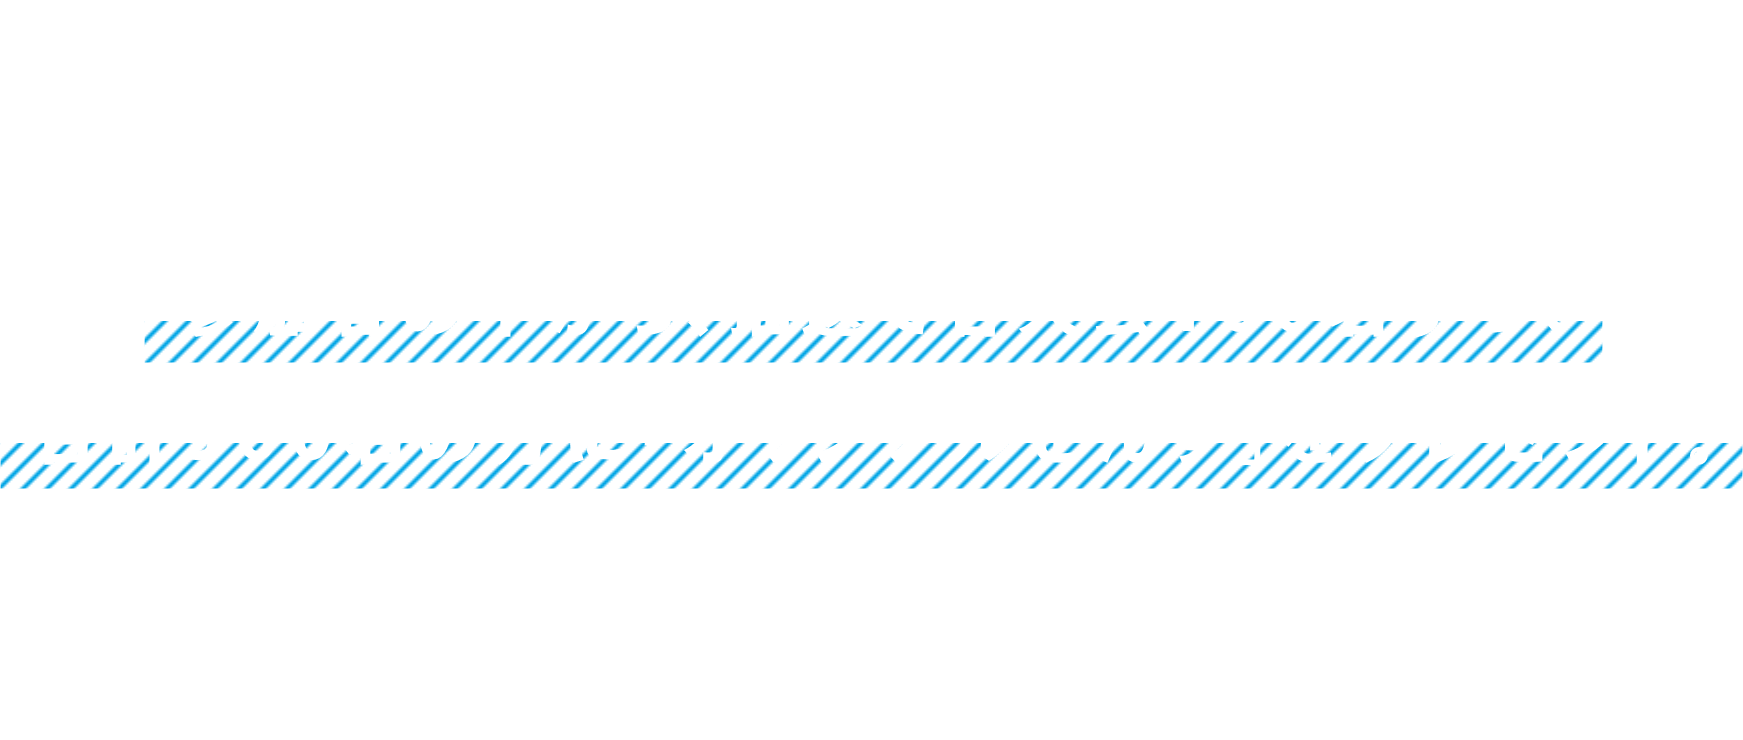 『スプラトゥーン2』『大乱闘スマッシュブラザーズ SPECIAL』『マリオカート8 デラックス』のオンライン大会を開催します。参加者の中から、抽選で各大会100名ずつ、合計300名の方に「オリジナルせんす」をプレゼント。さらに成績上位の方は10月8日（土）・9日（日）に東京ビッグサイトで開催される「Nintendo Live 2022」にご招待します。